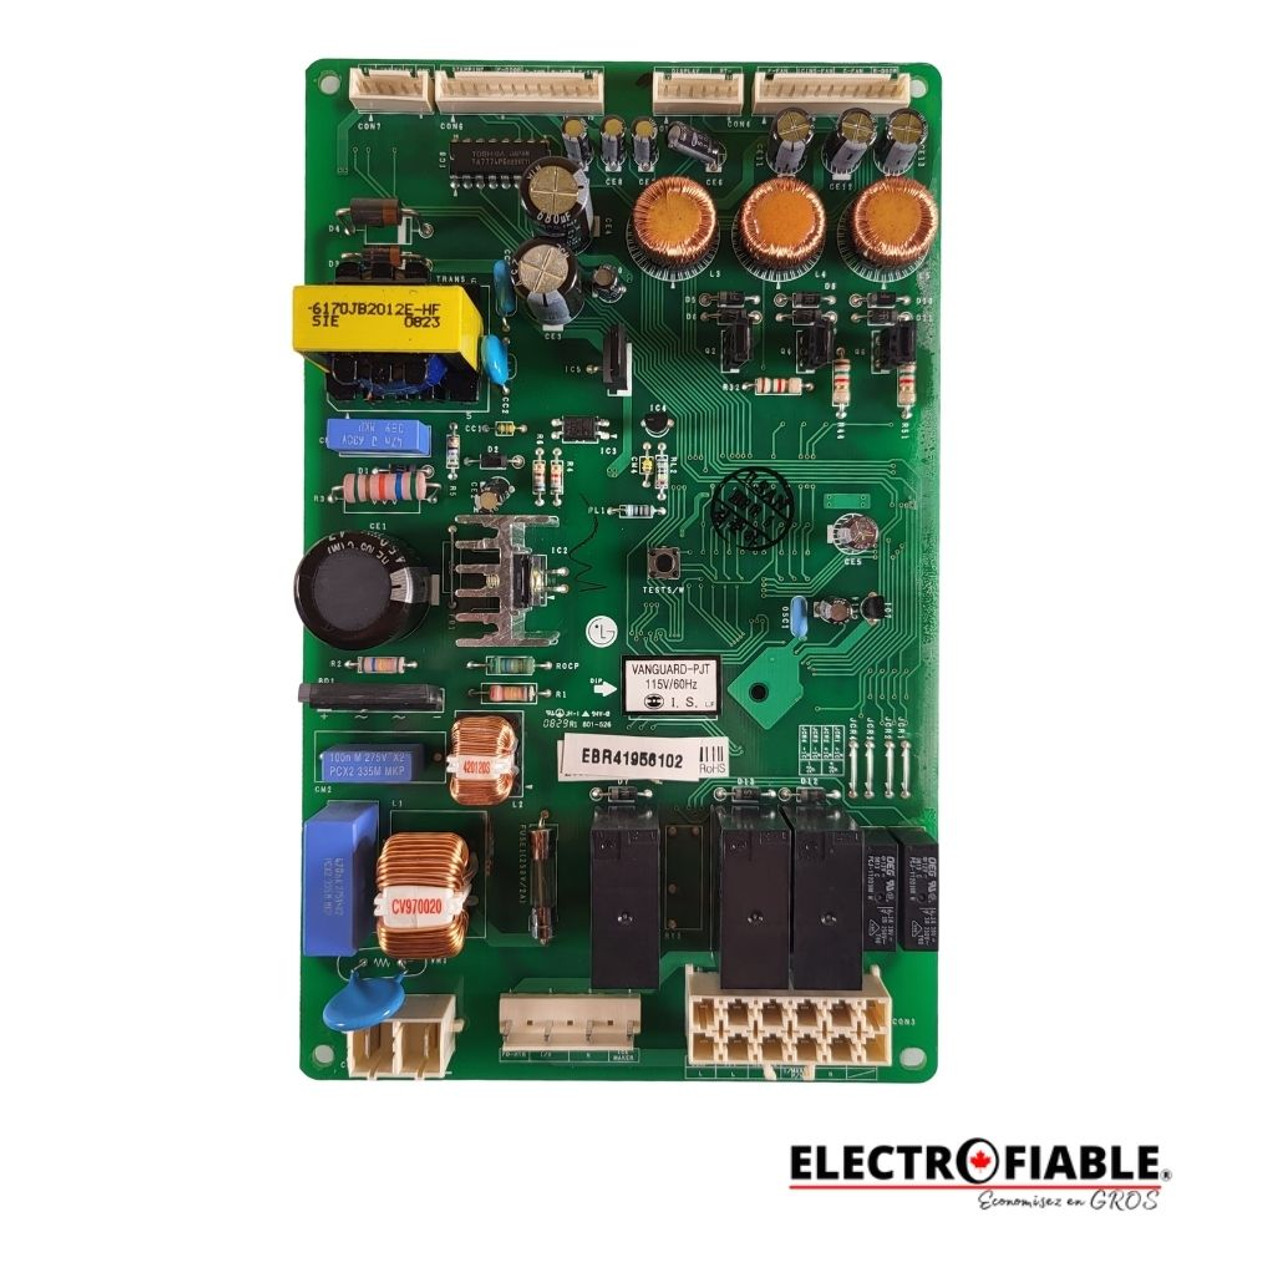 EBR41956102 Control board for LG refrigerator